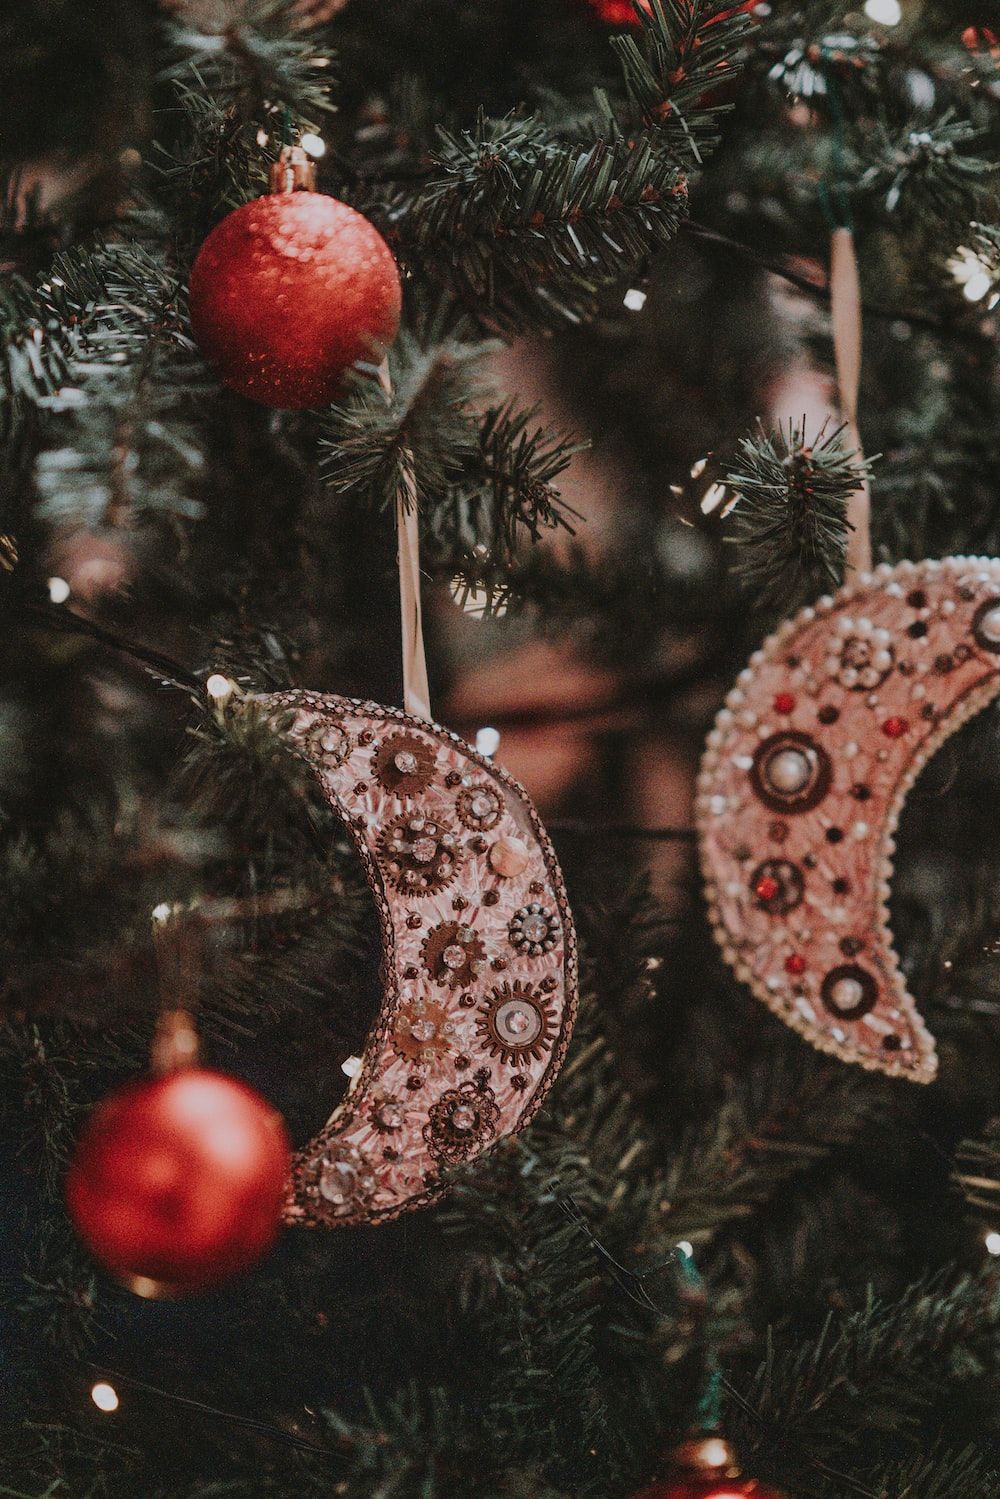  Weihnachtsbaum Hintergrundbild 1000x1499. Foto zum Thema Weihnachtsbaum mit Ornamenten